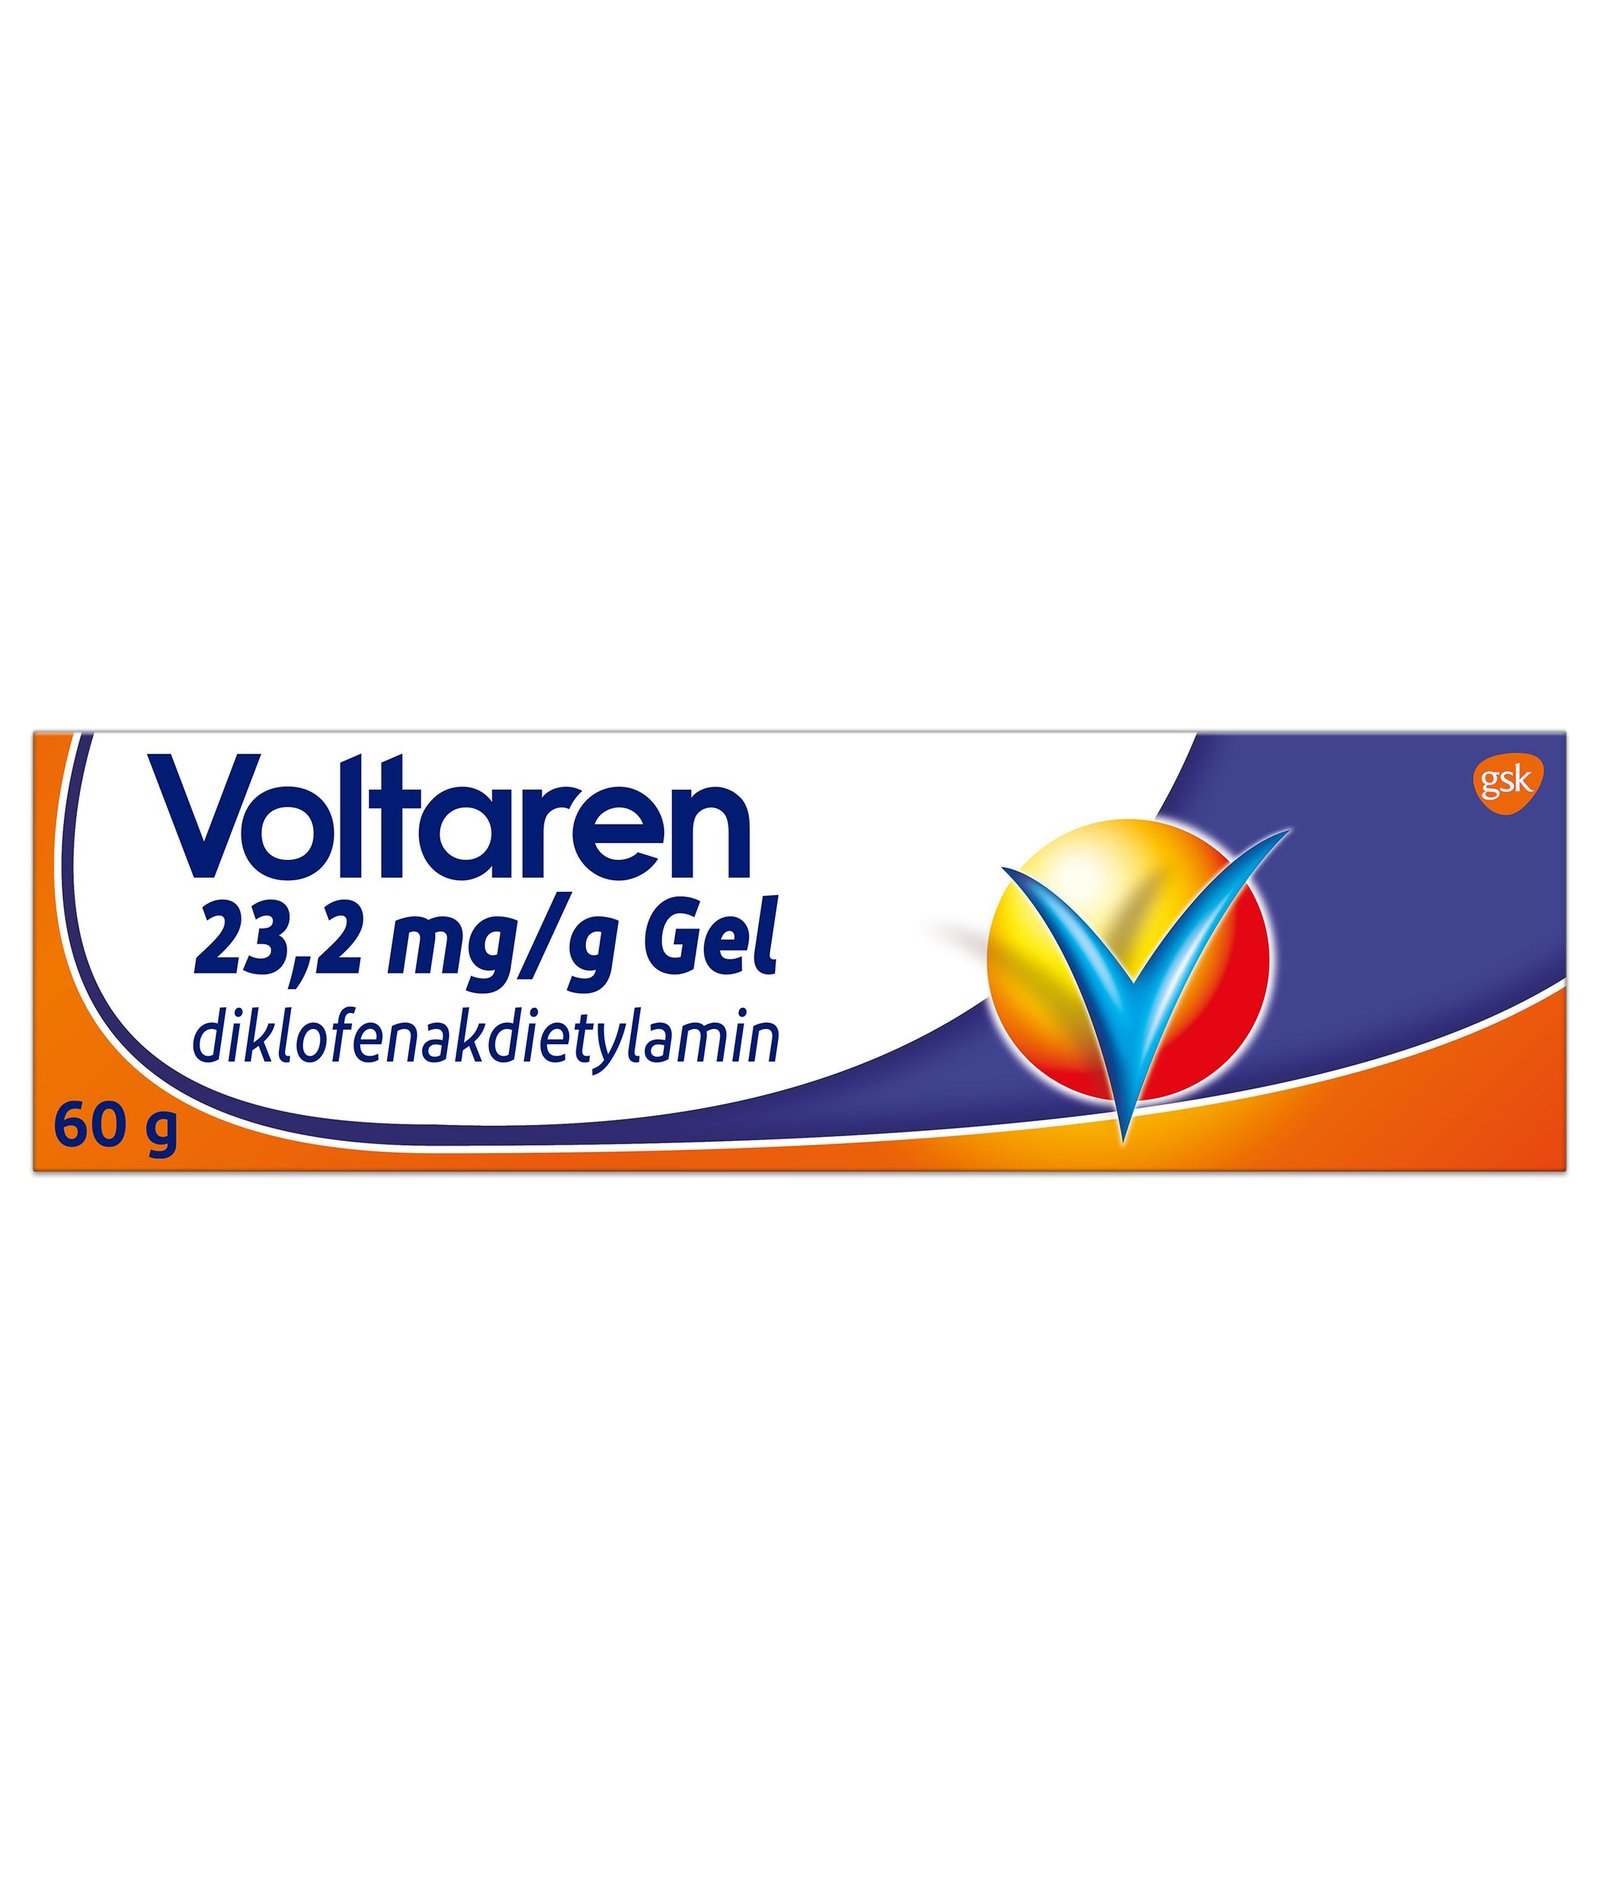 Voltaren 23,2 mg/g Gel 60g